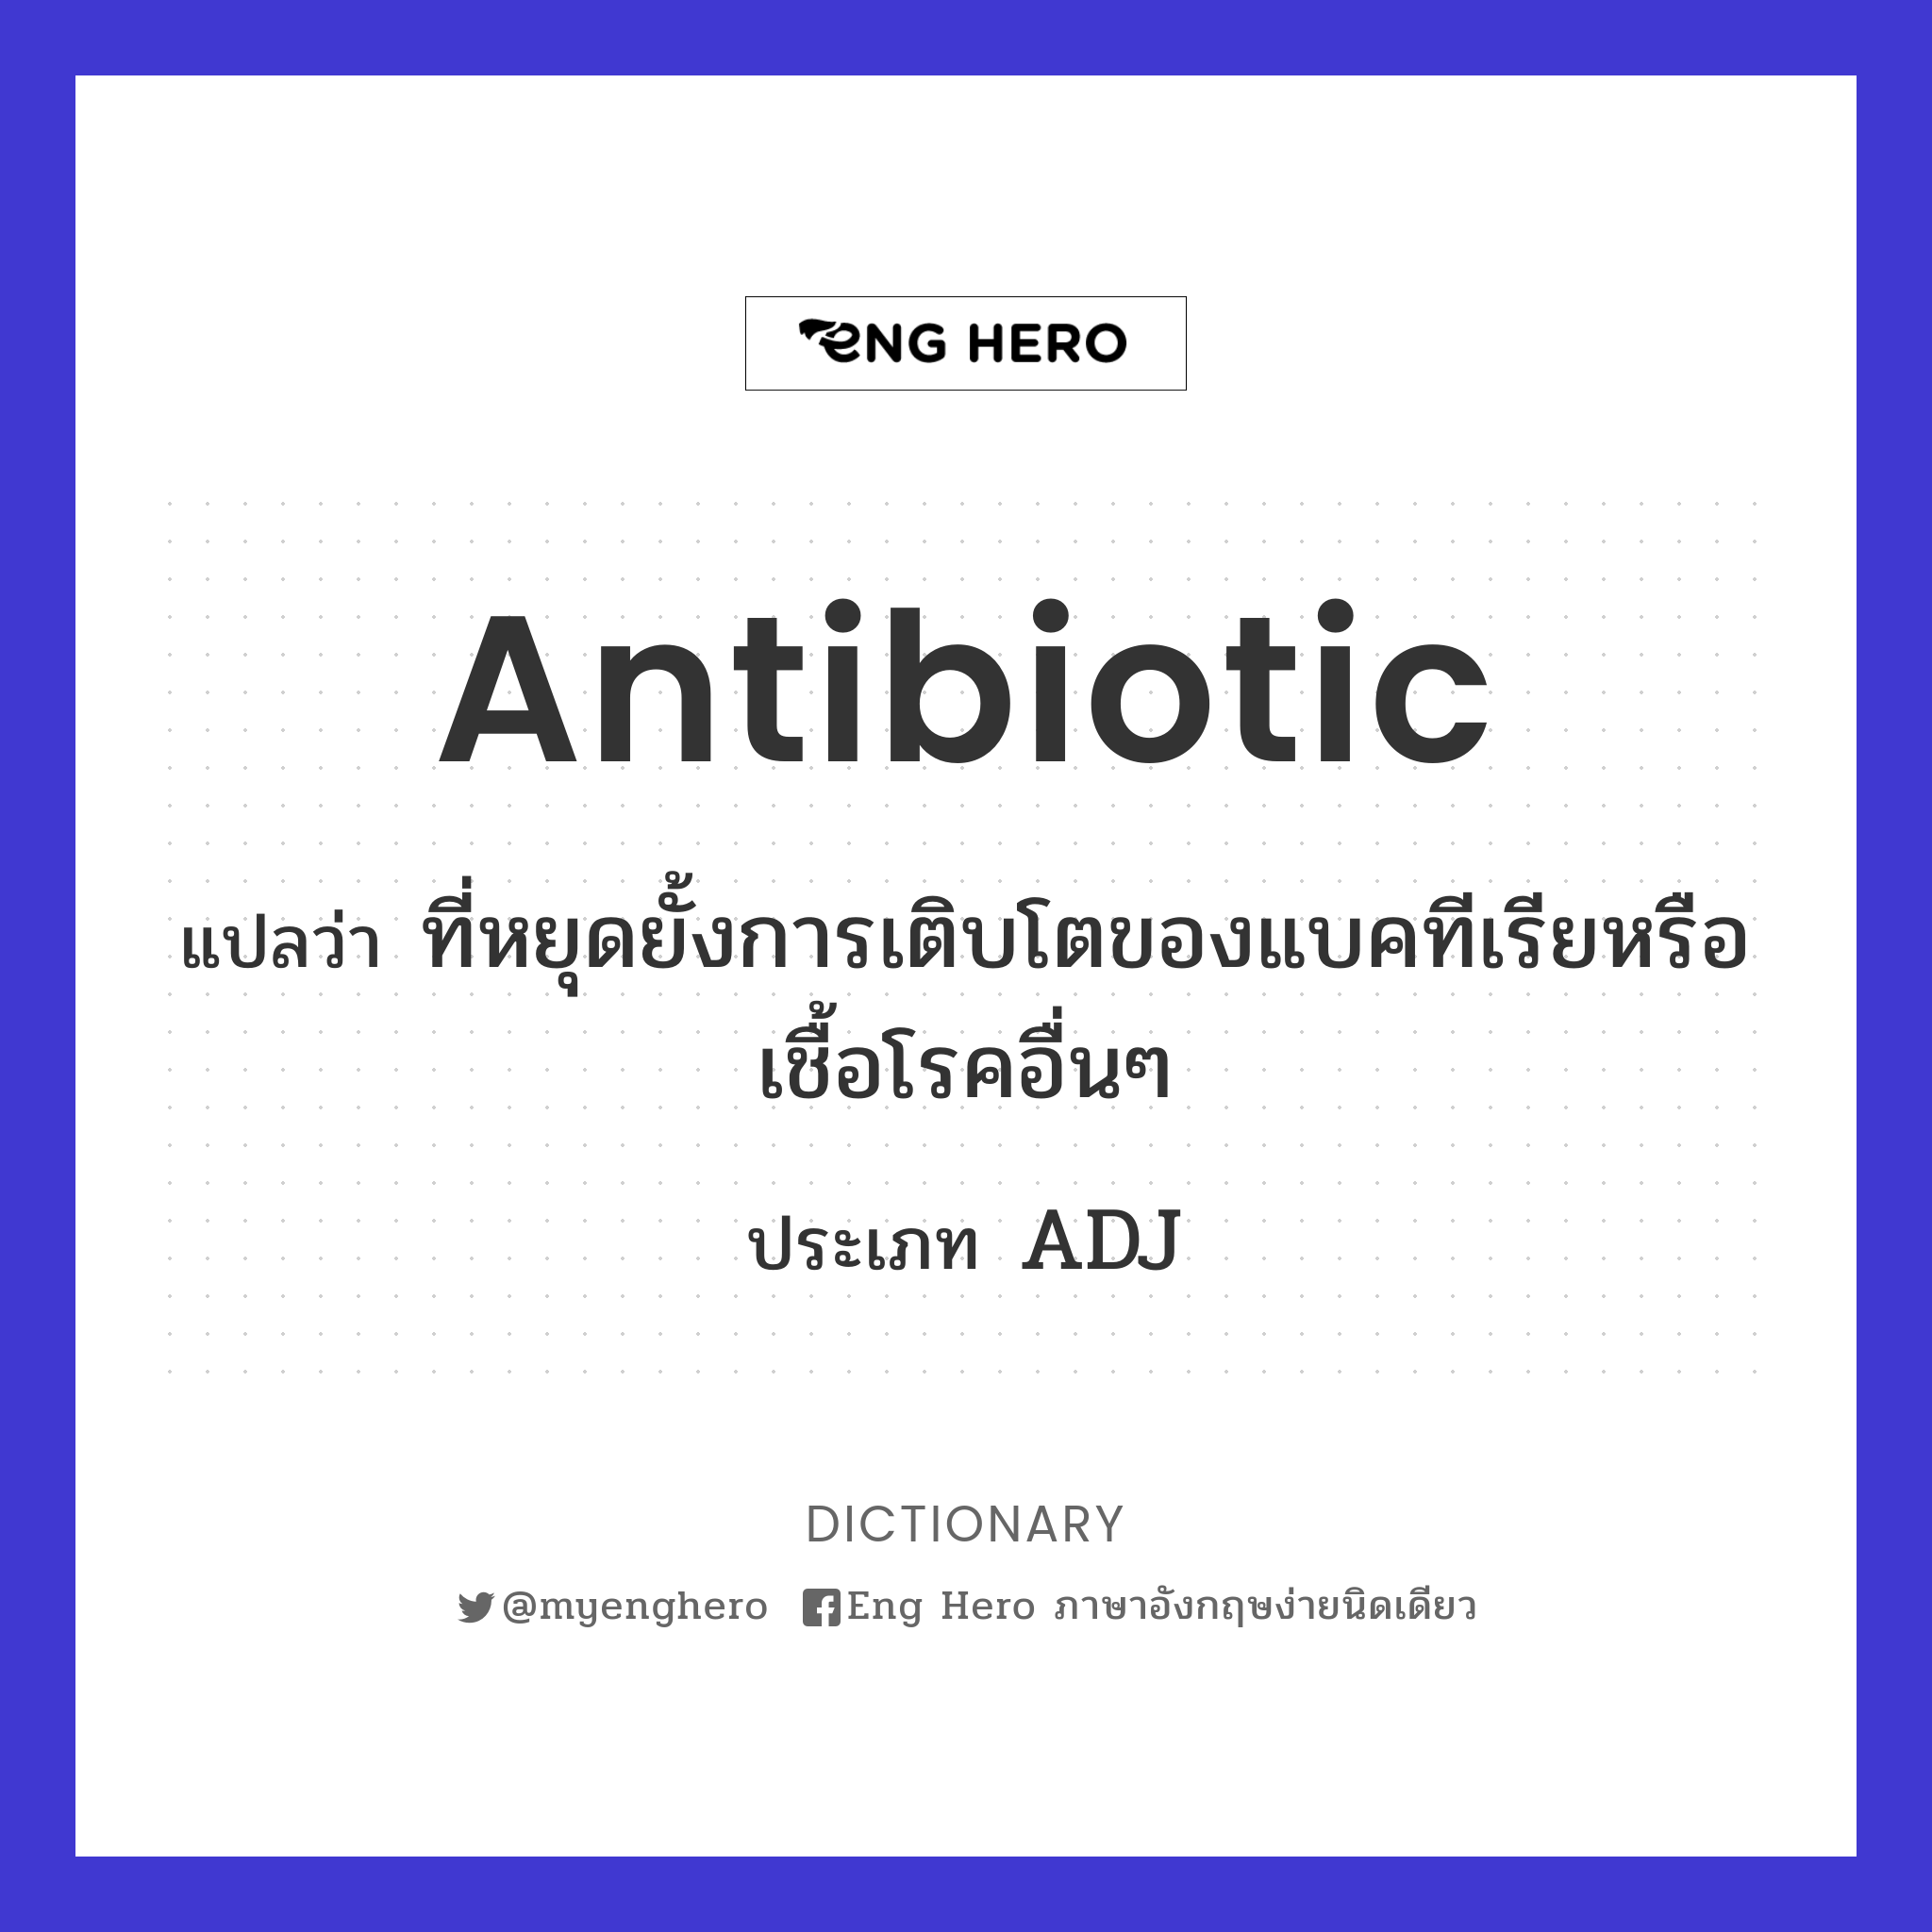 antibiotic